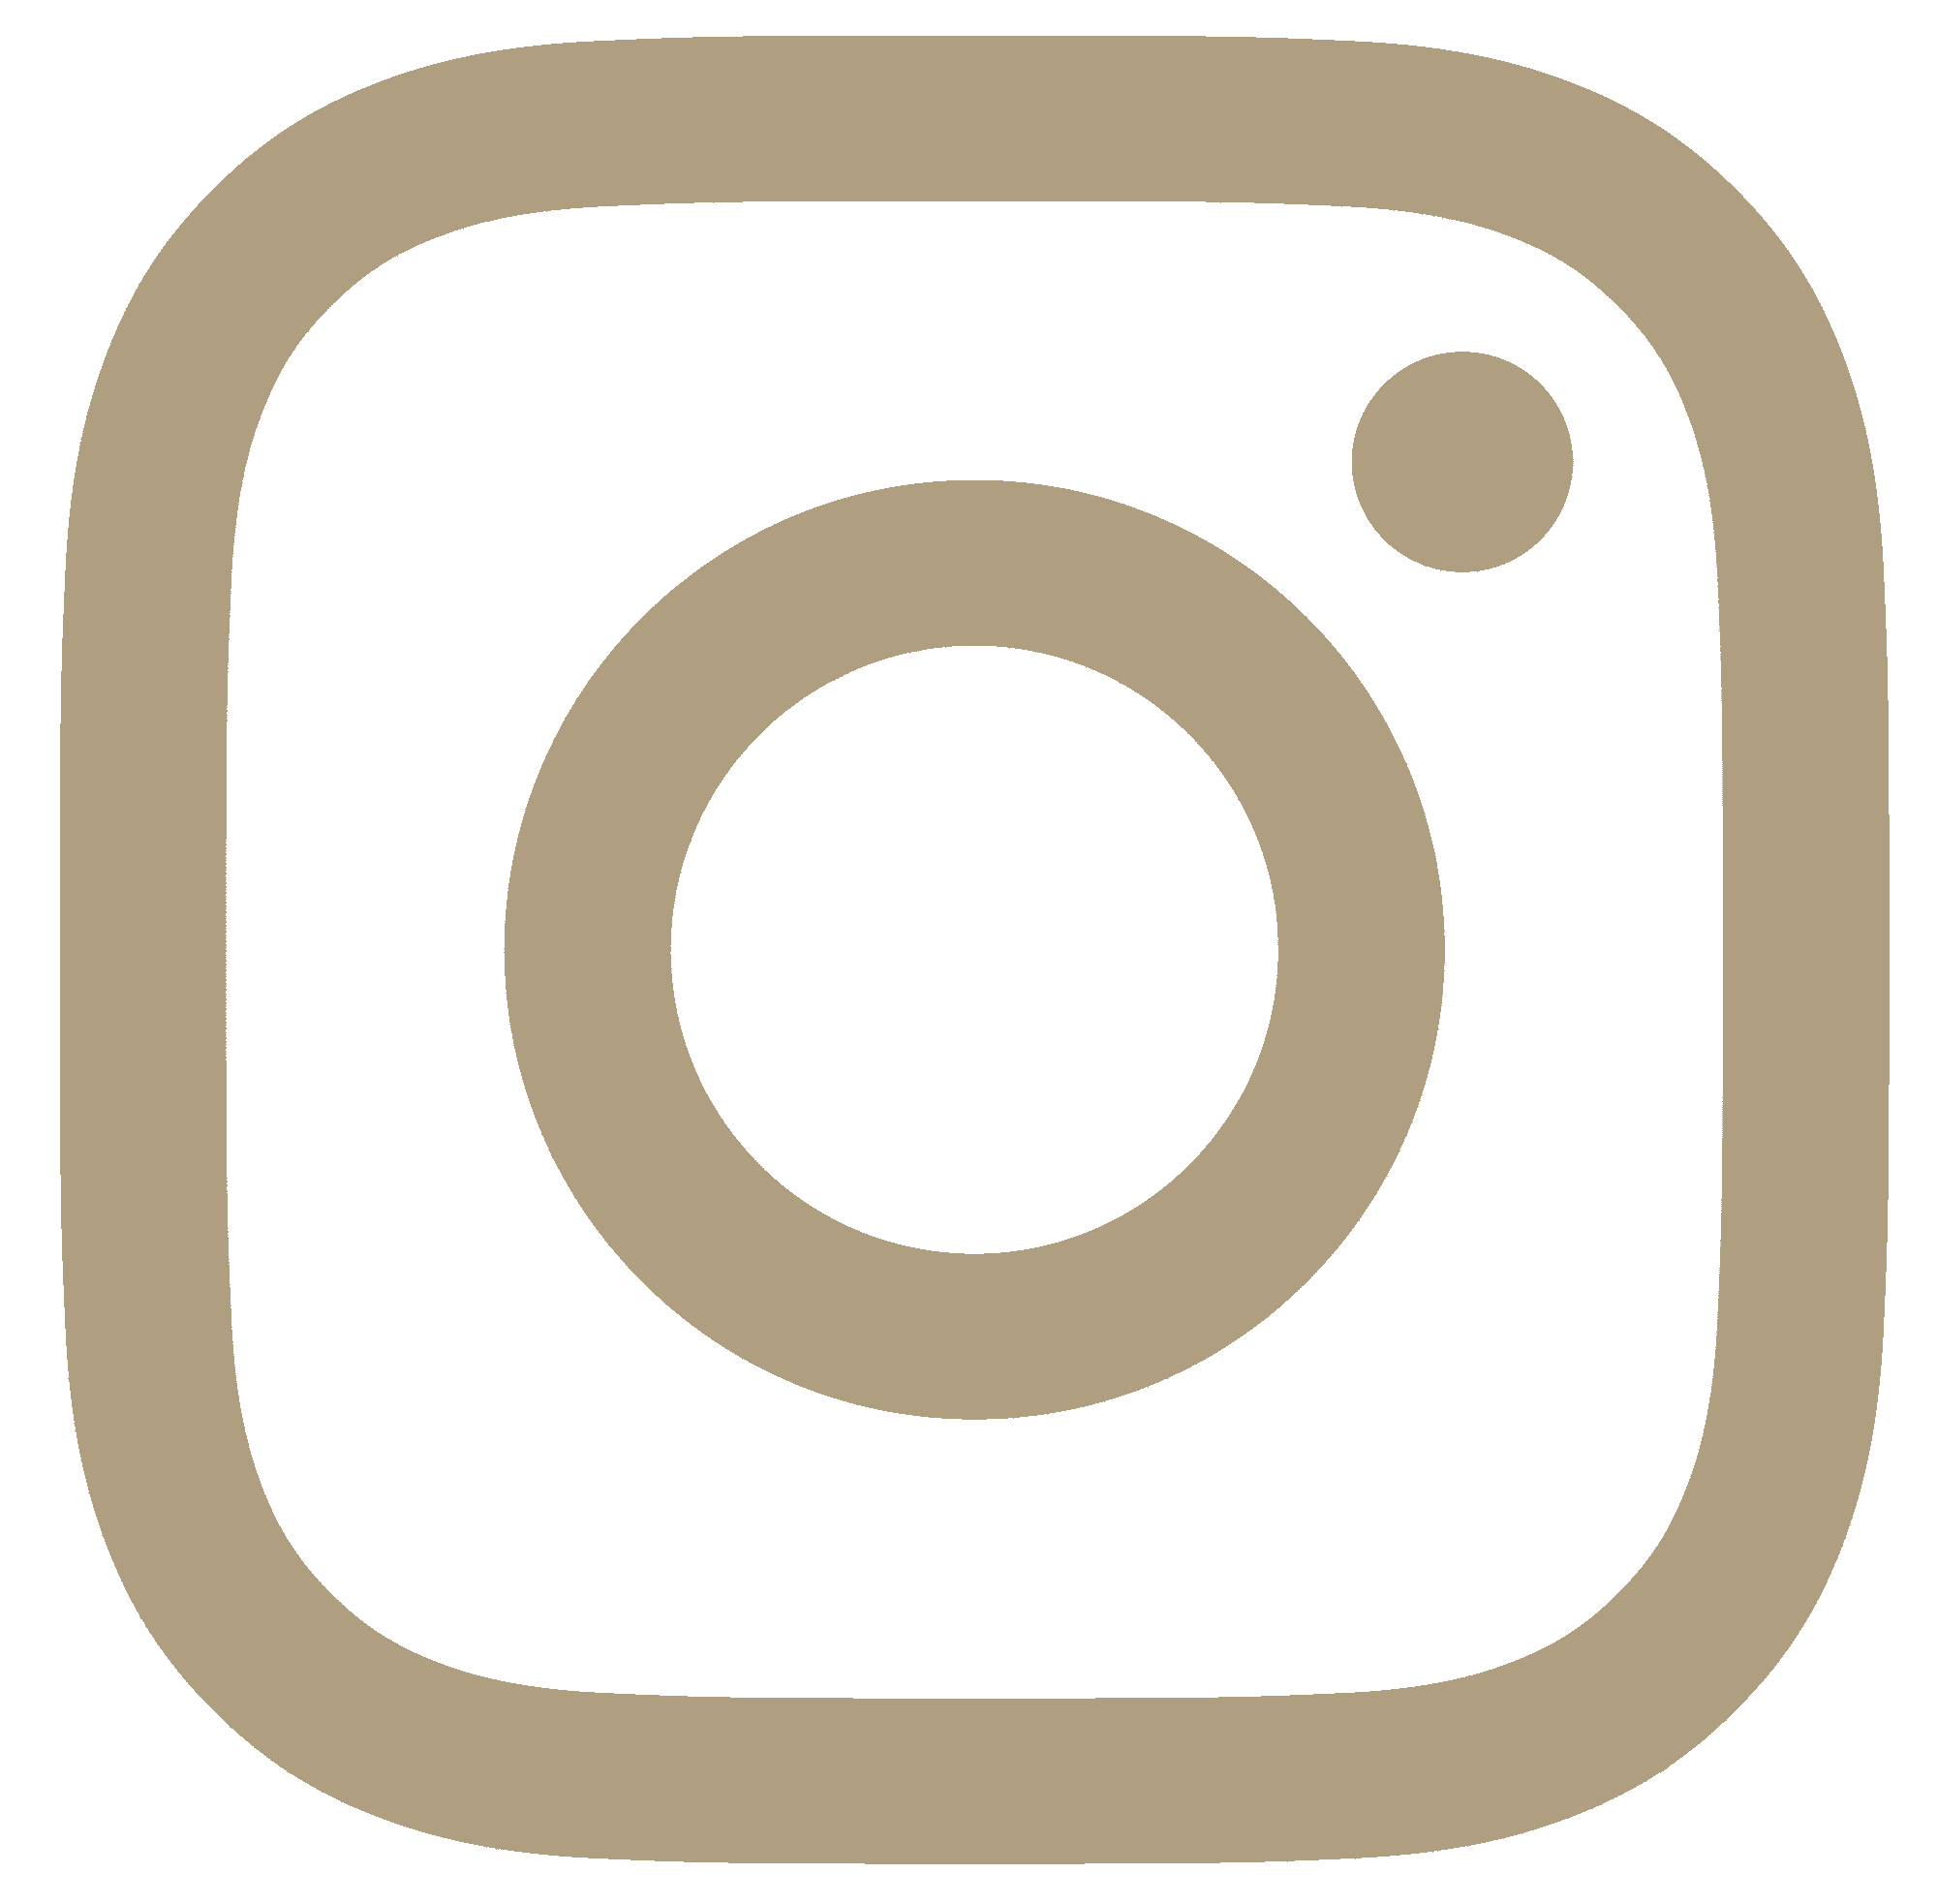 Instagram icon